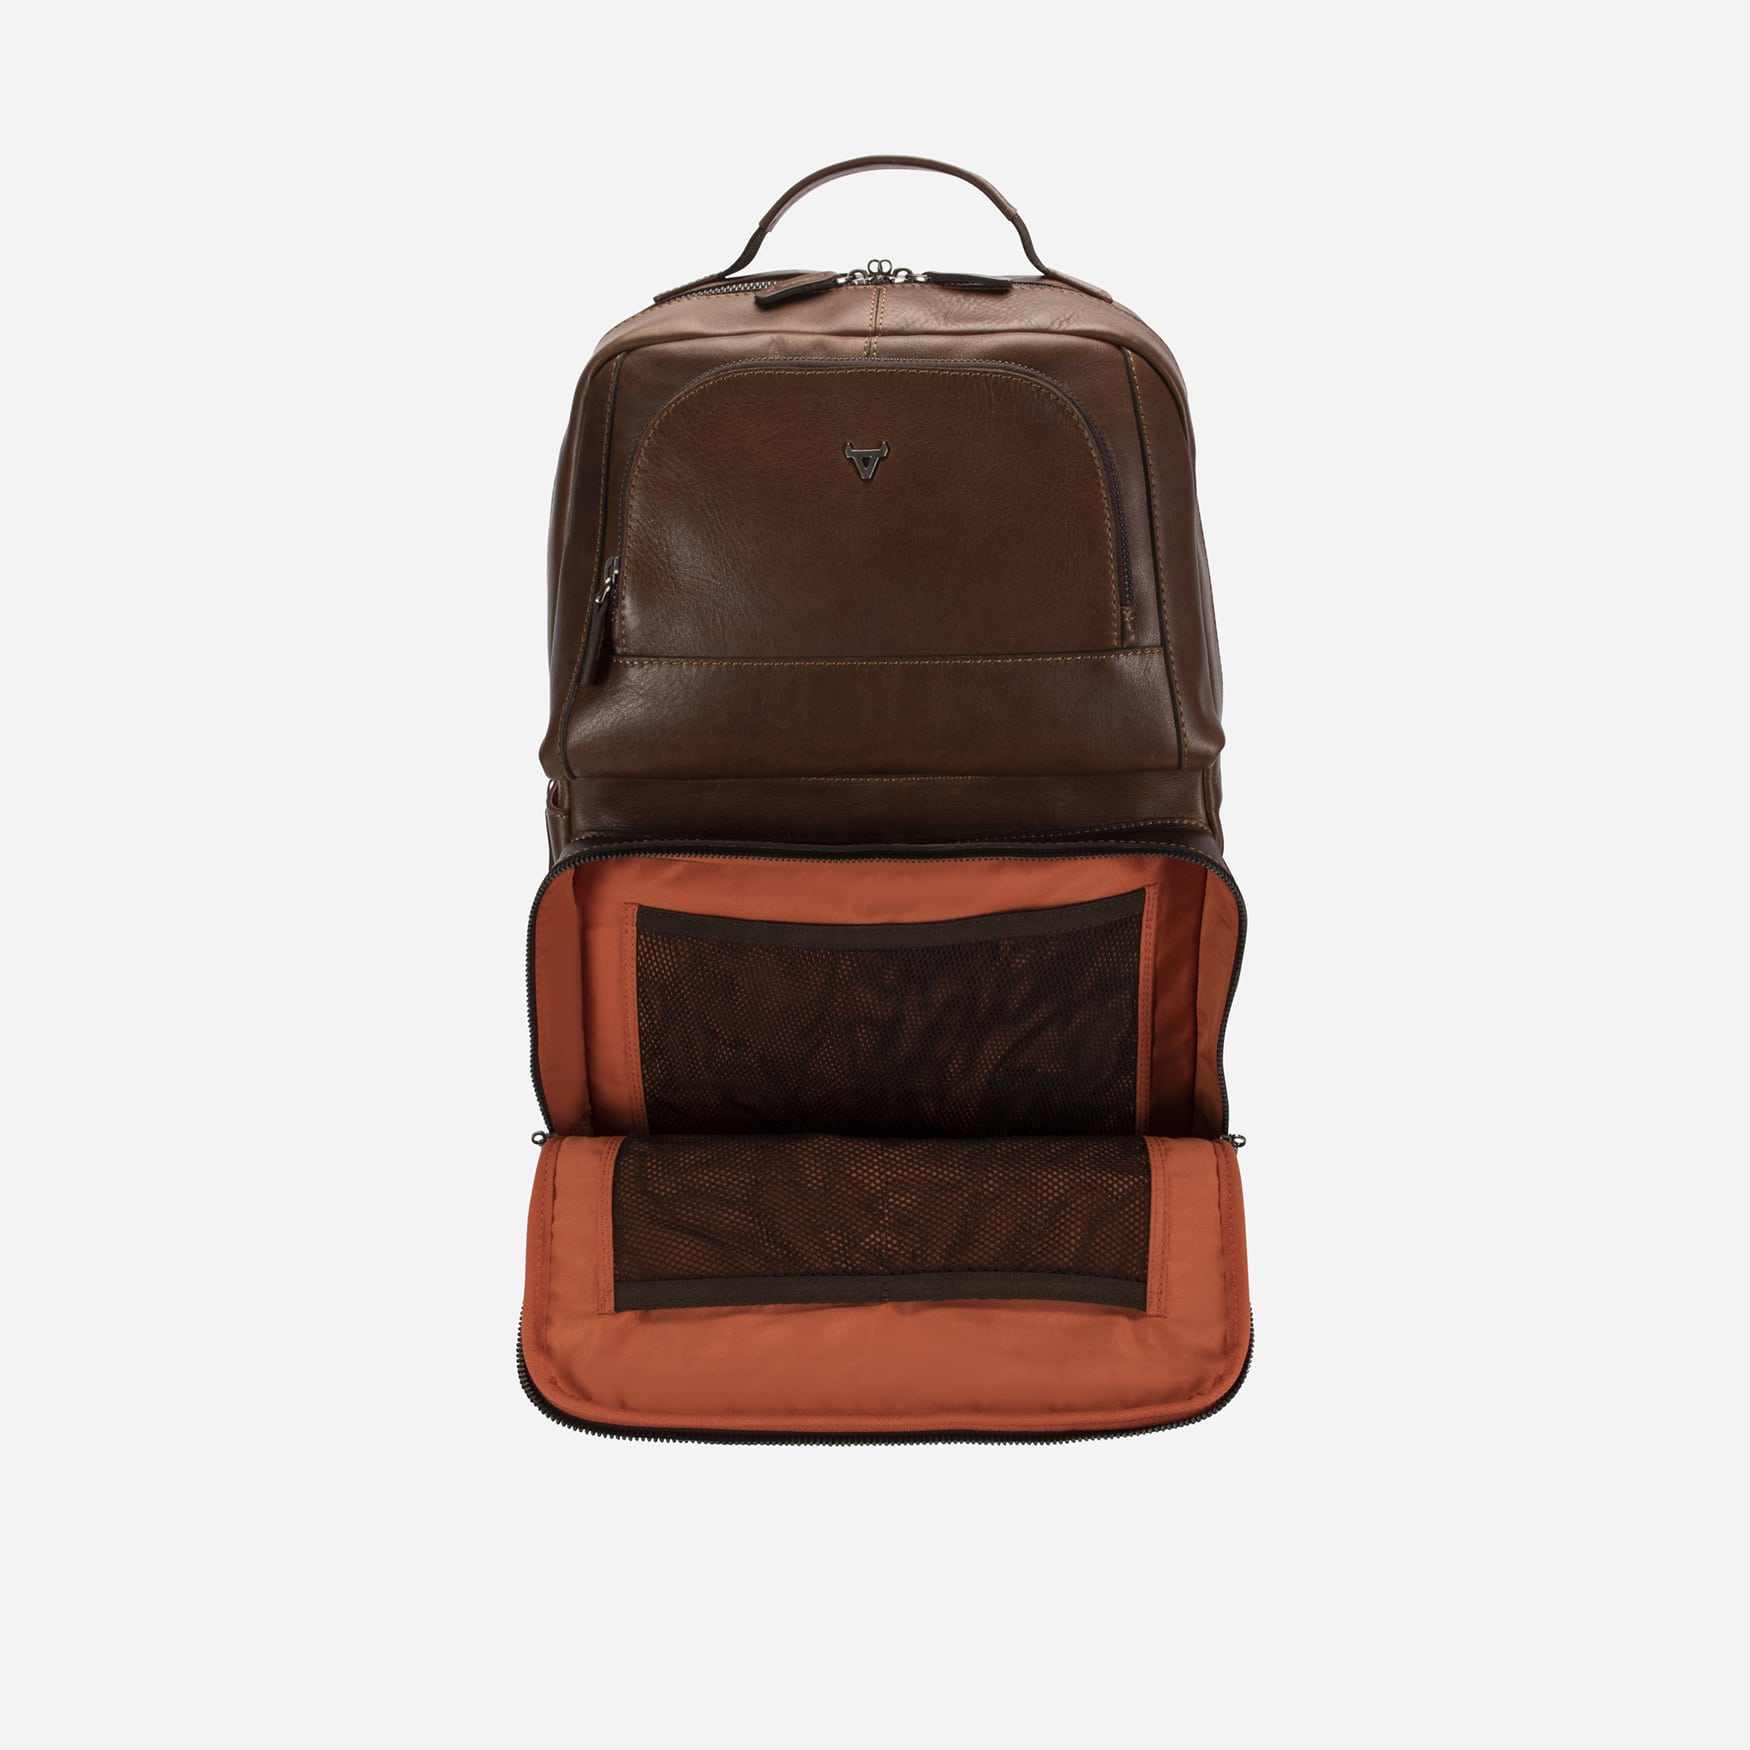 Brosnan 15" Backpack, Brown